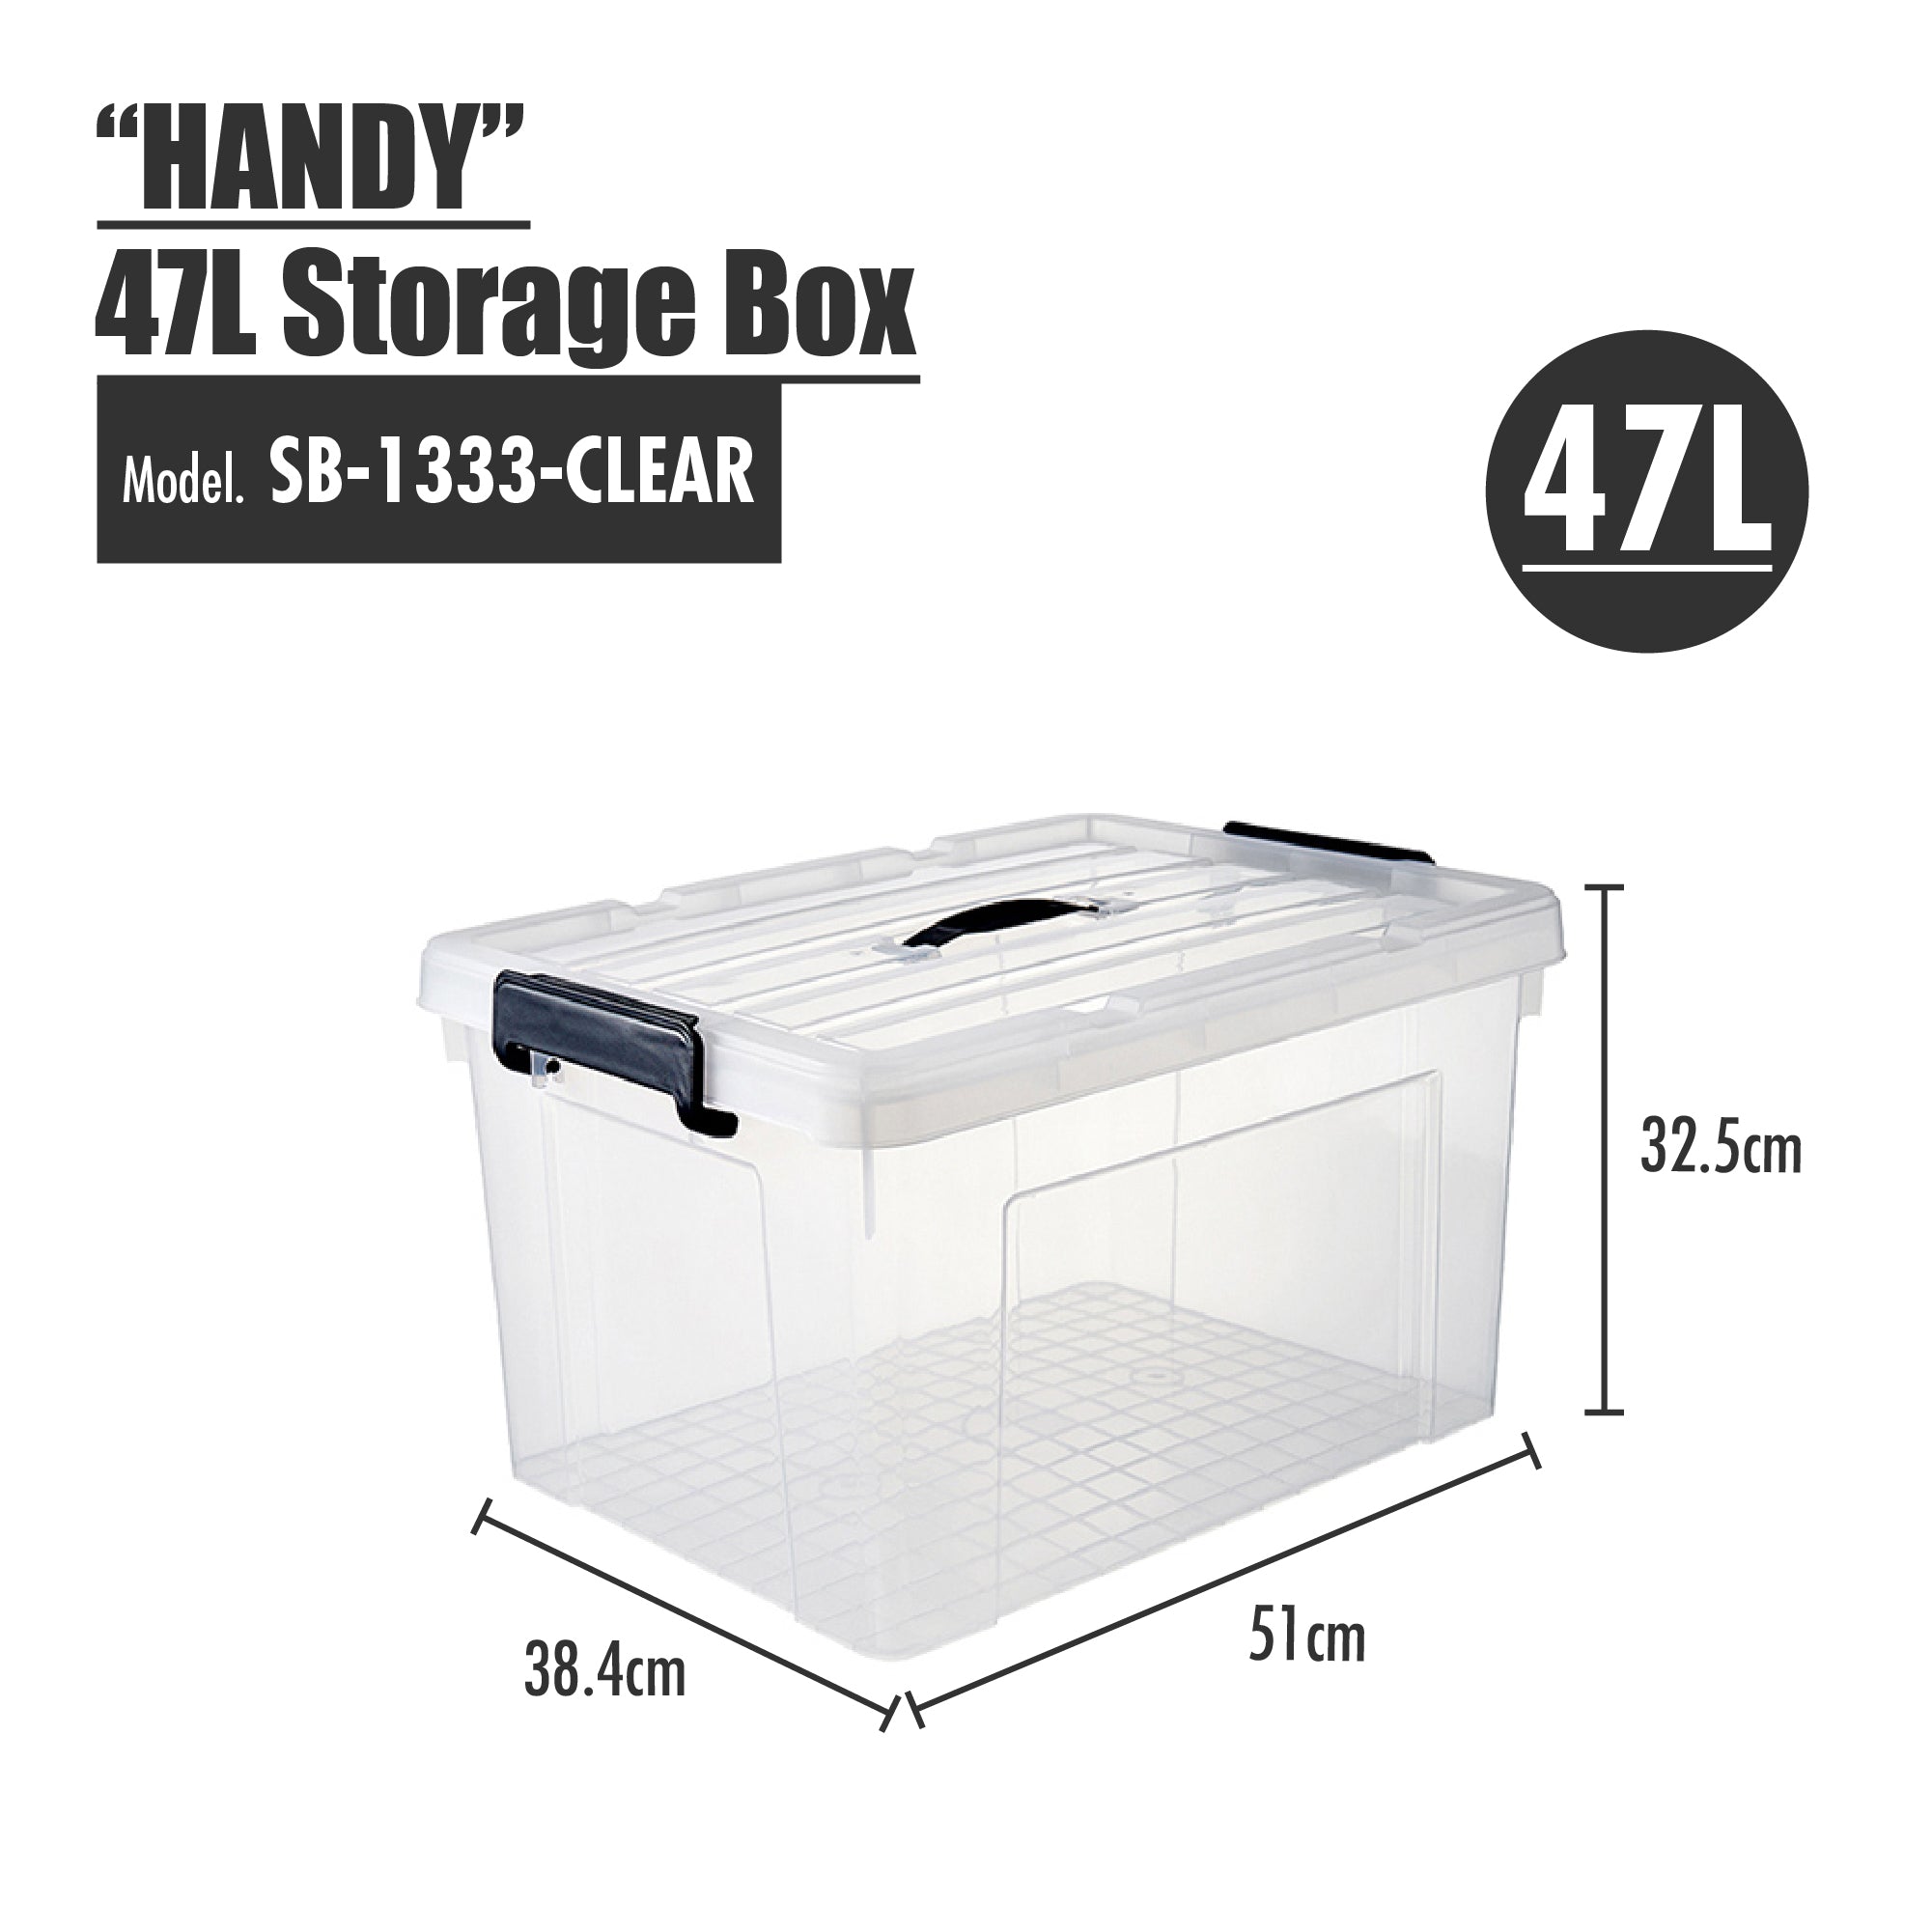 HOUZE - 'HANDY' Handheld 20L/33L/47L/63L Storage Box (Clear)